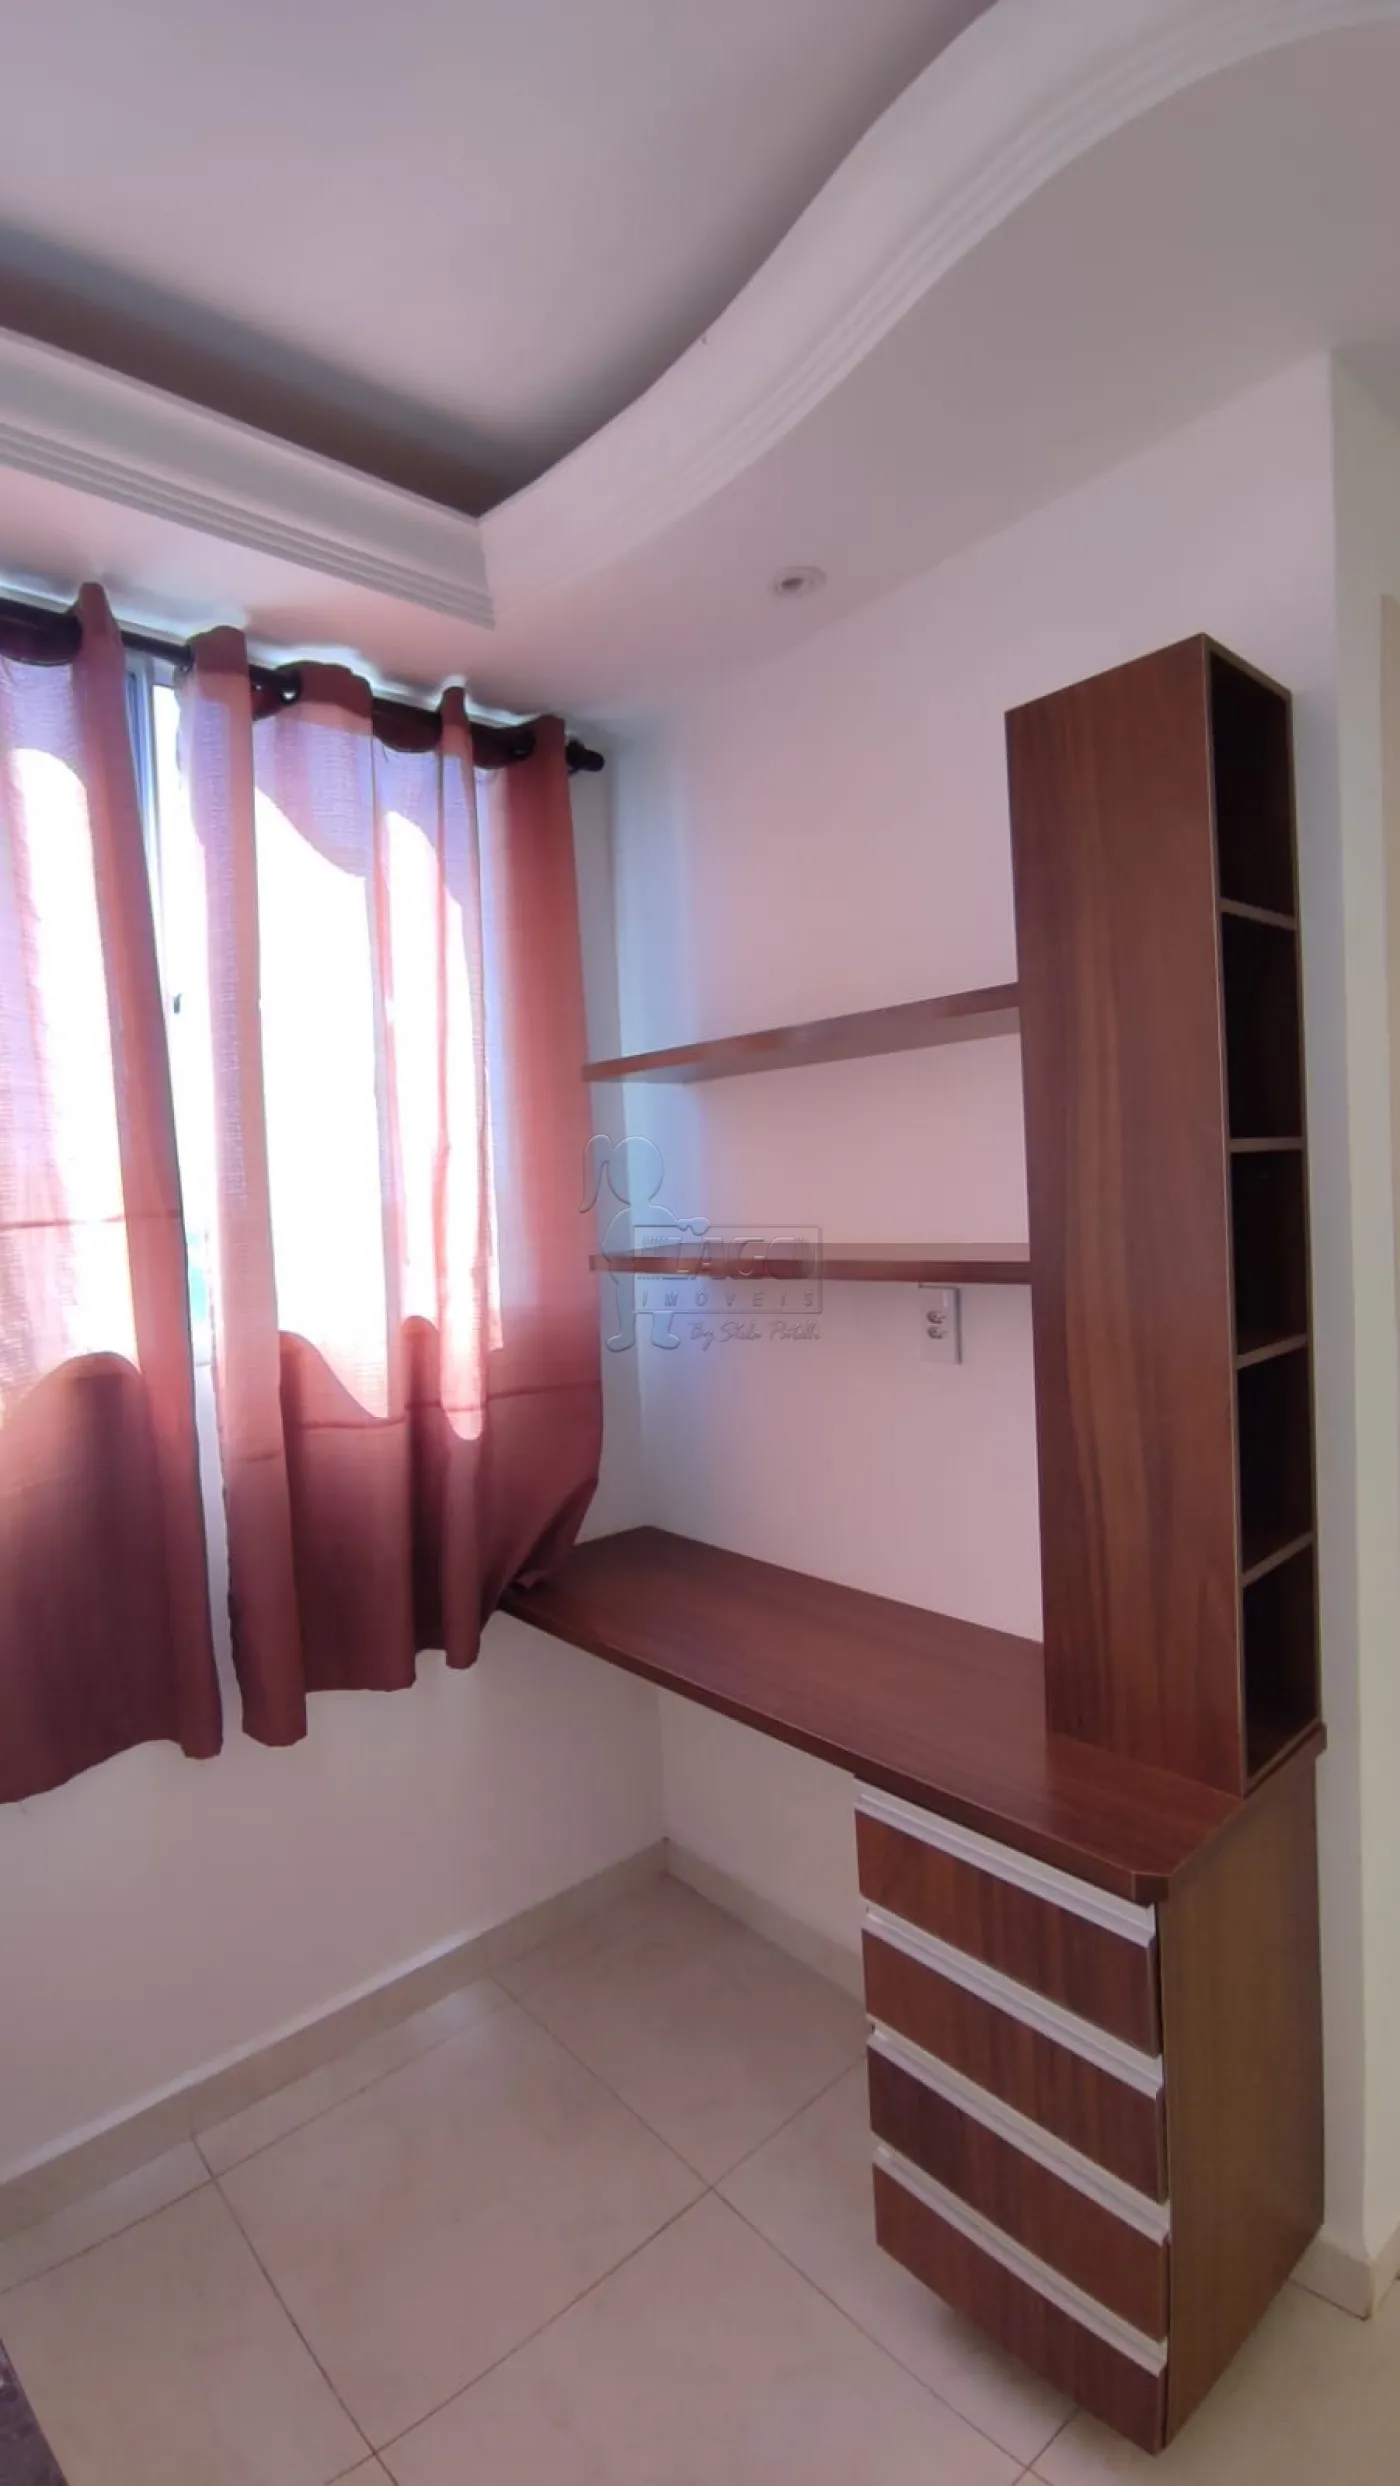 Comprar Apartamento / Cobertura duplex em Ribeirão Preto R$ 350.000,00 - Foto 11